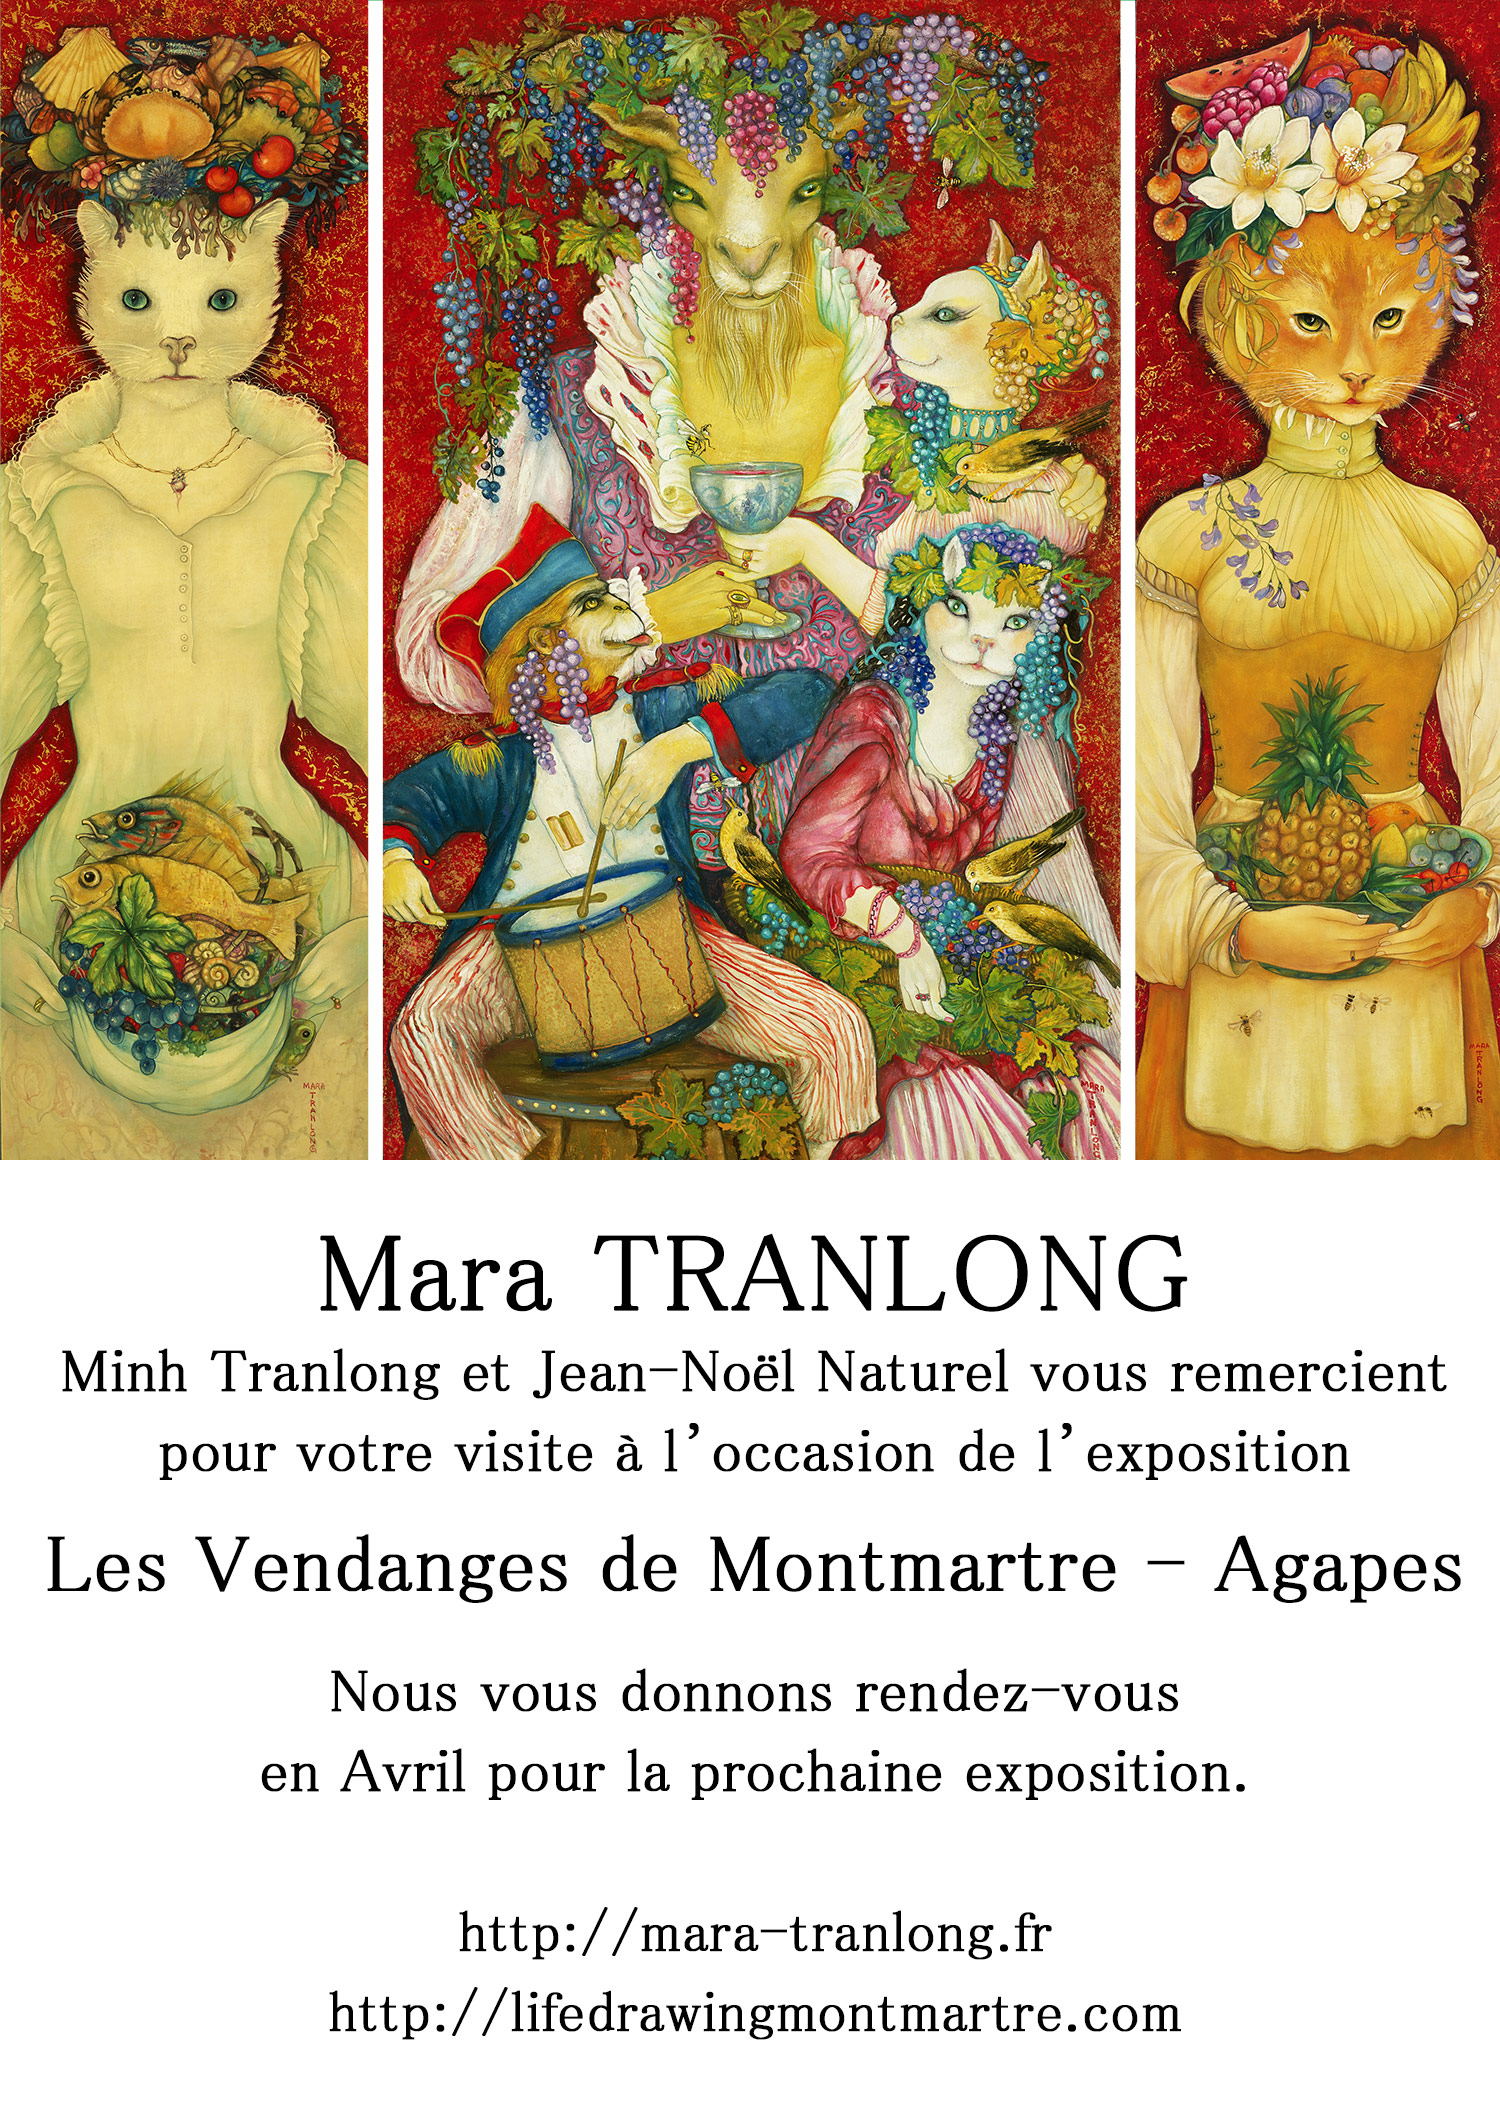 Mara Tranlong "Les Vendanges de Montmartre - Agapes"